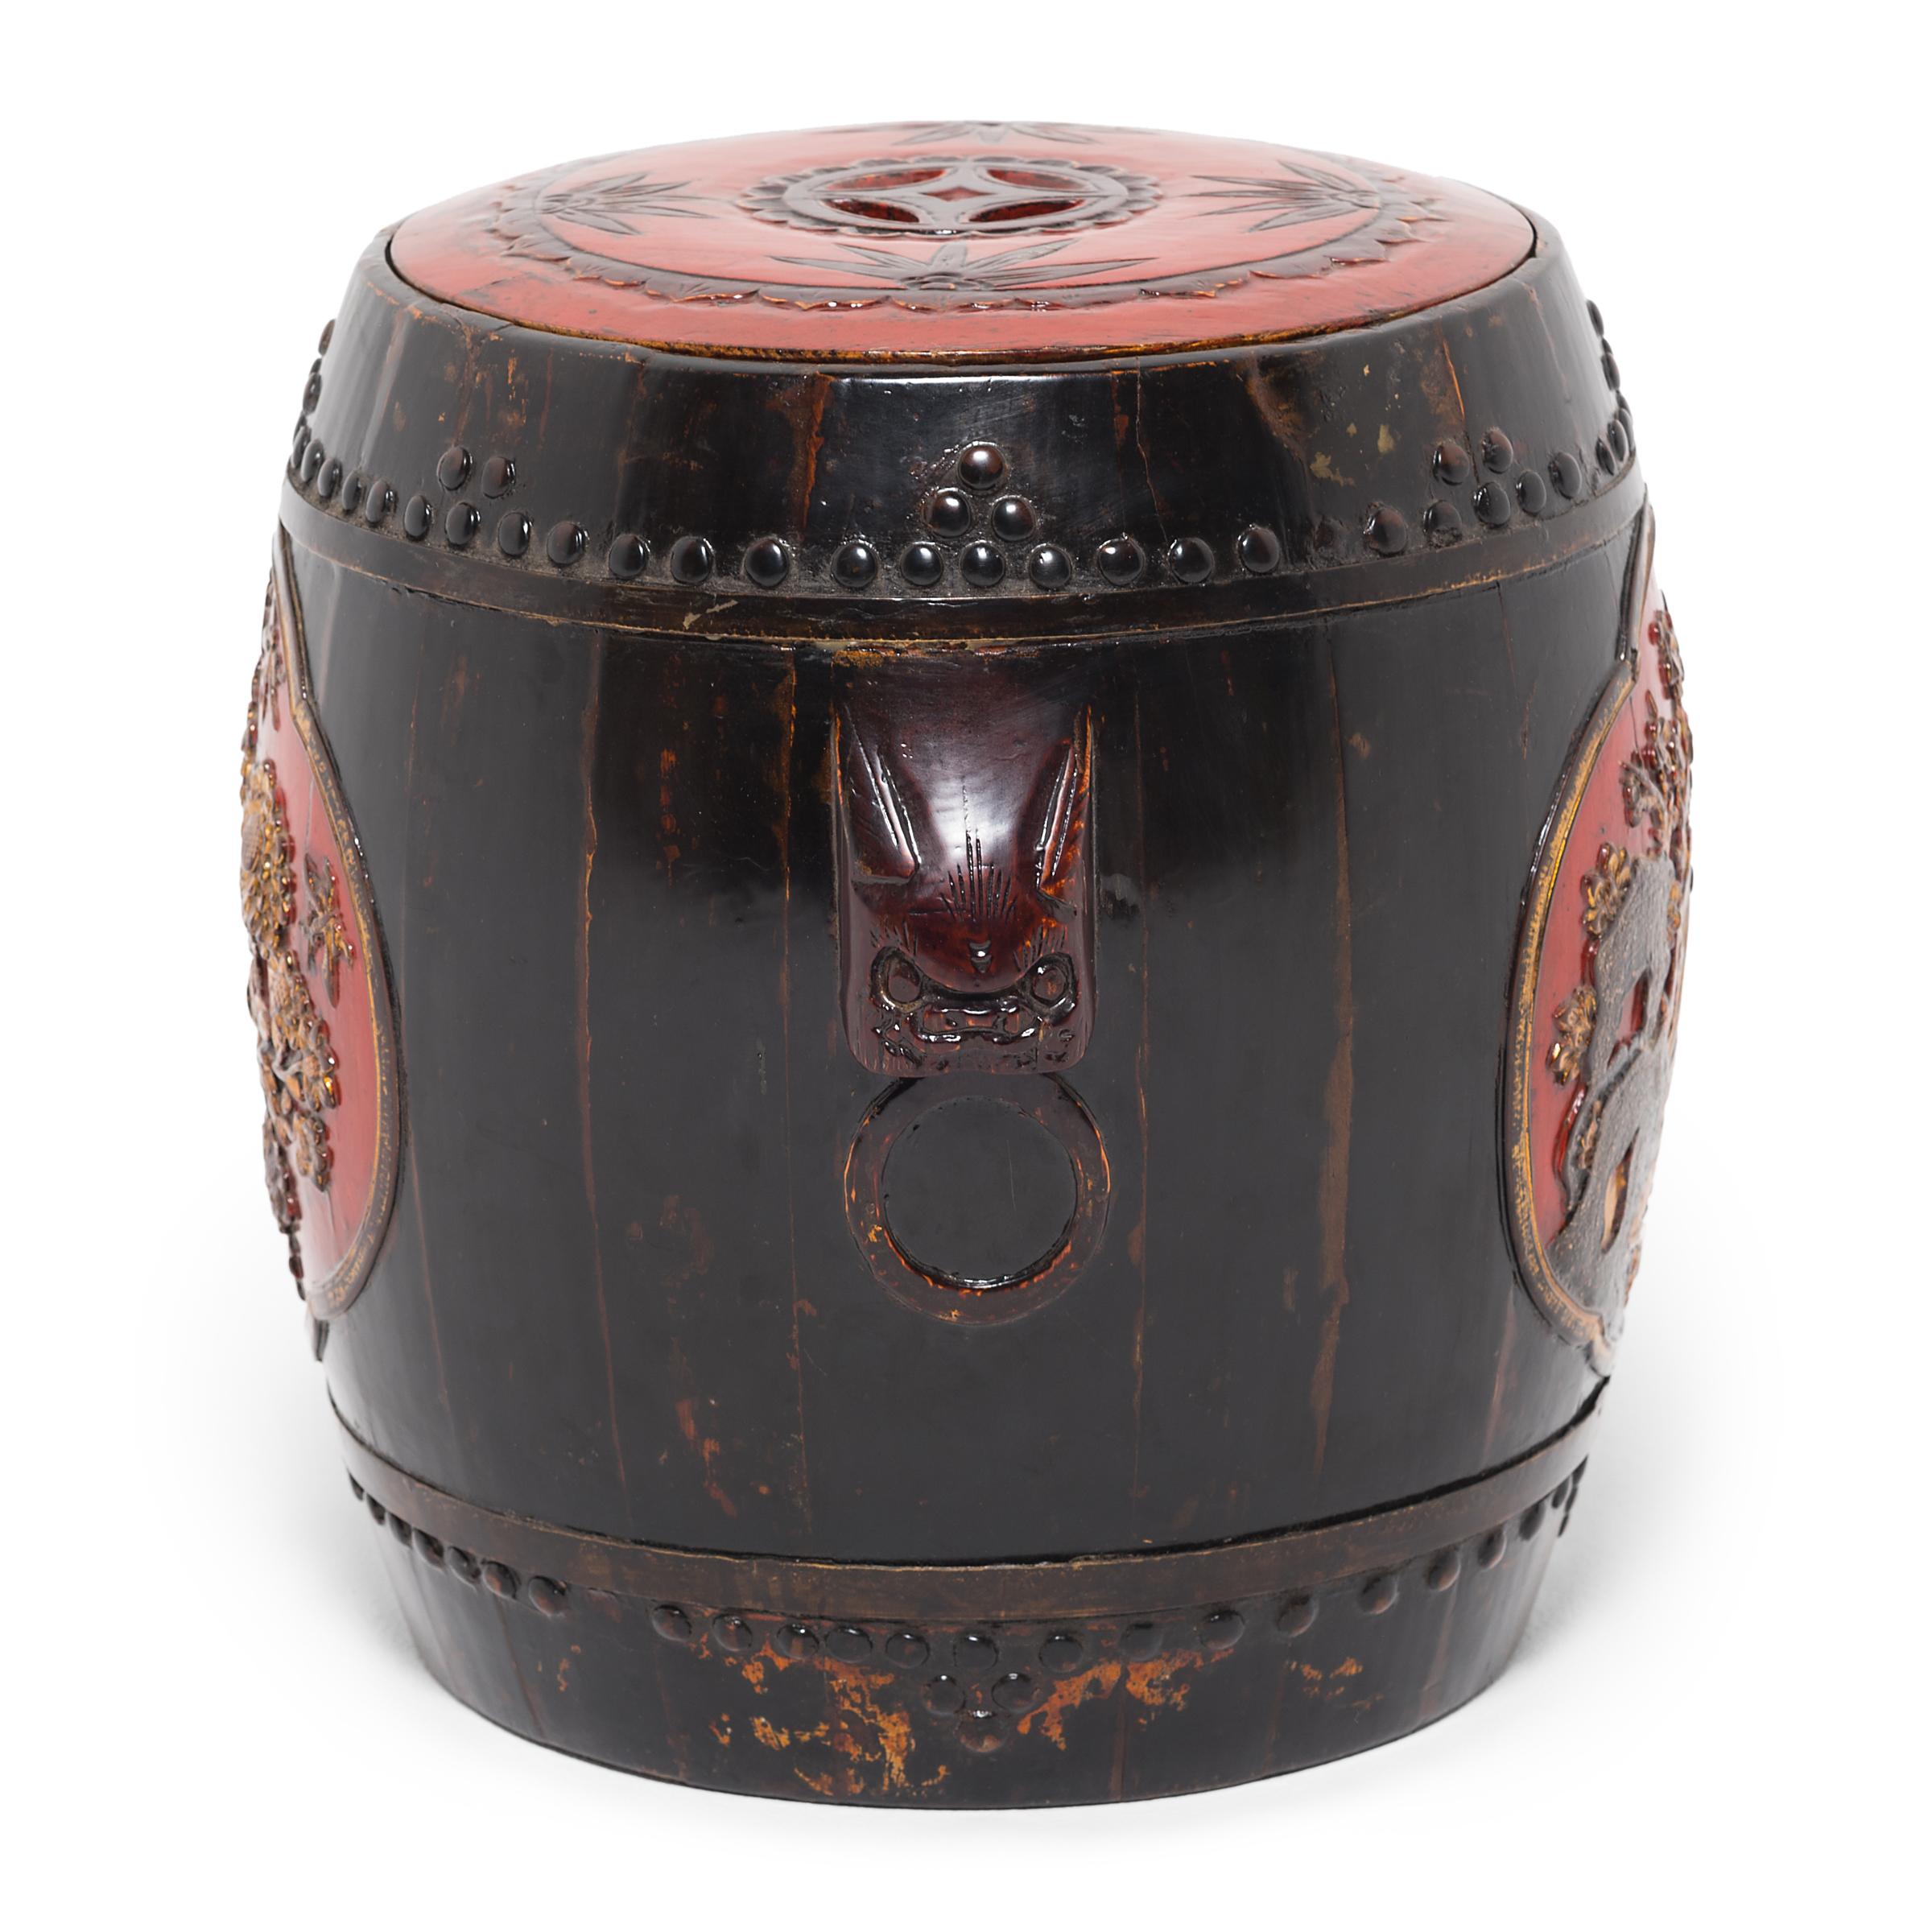 Dieser trommelförmige Hocker aus dem 19. Jahrhundert ist in traditioneller Stab- und Reifenkonstruktion gefertigt und mit zwei Bändern aus dekorativen Nagelköpfen versehen. Der Hocker ist in Rot und Gold gestrichen, zwei Farben, die Glück bringen